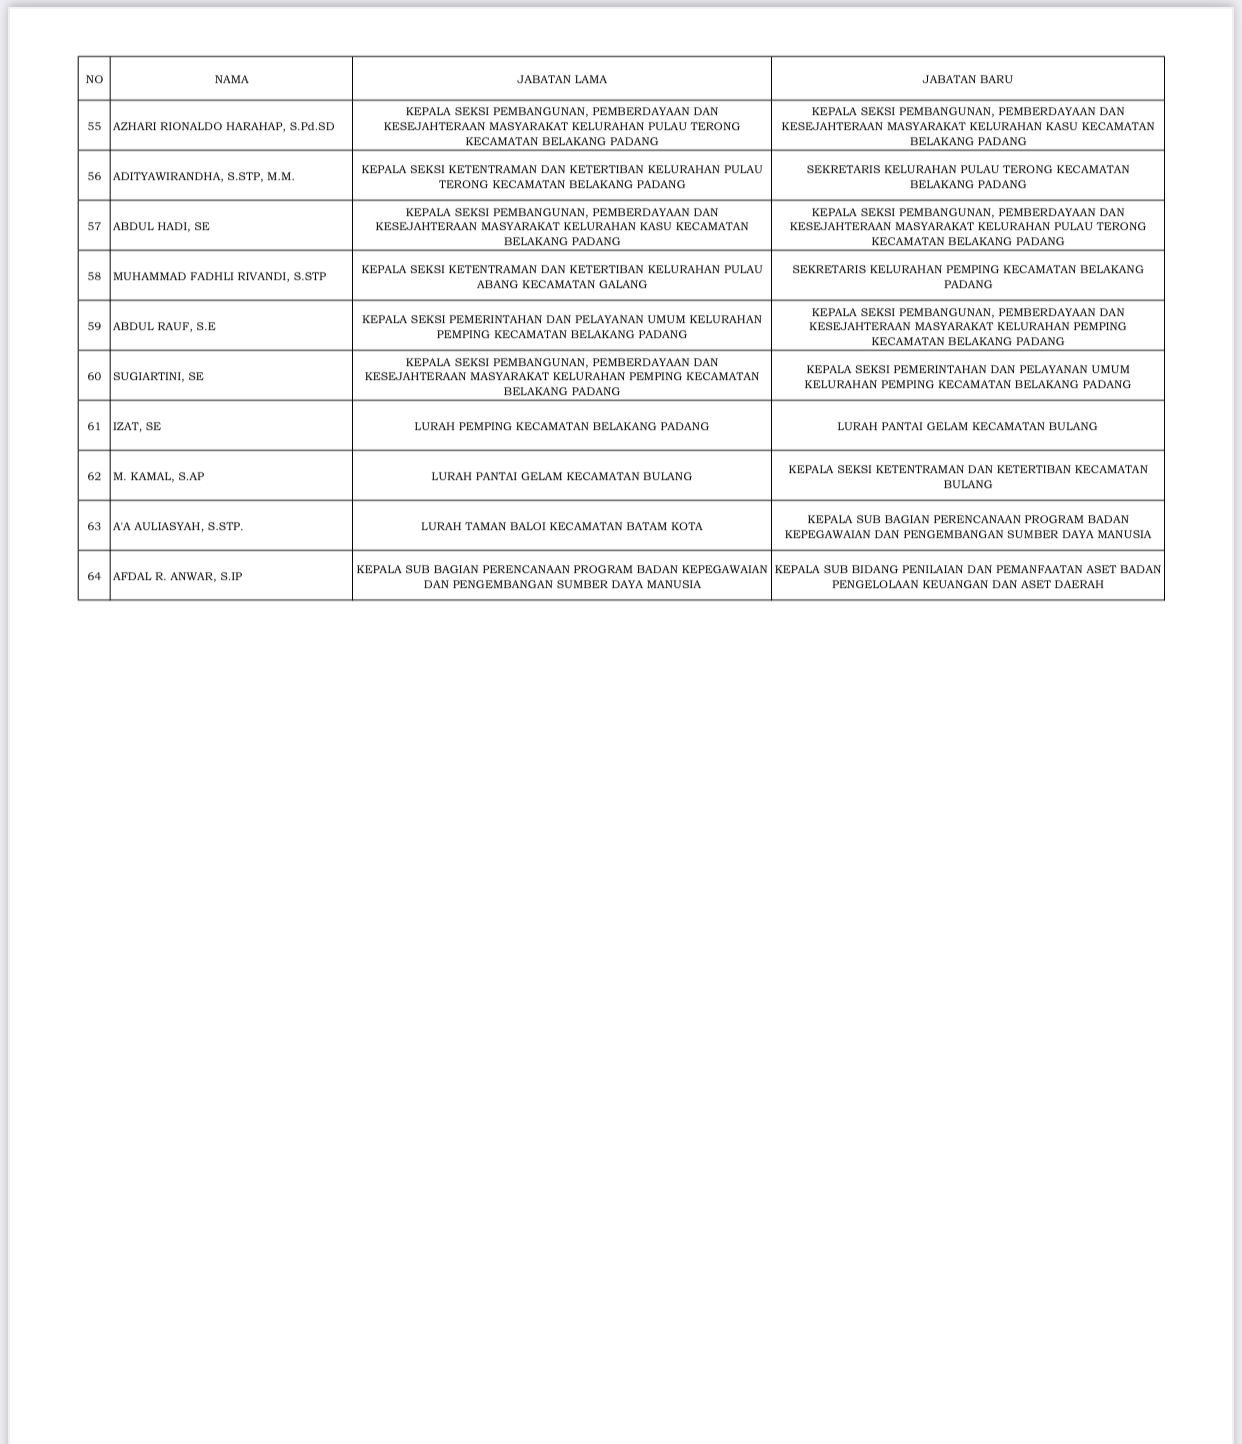 Daftar Nama Pejabat Baru di Lingkungan Pemko Batam, Pelantikan Jumat 17 Februari 2023